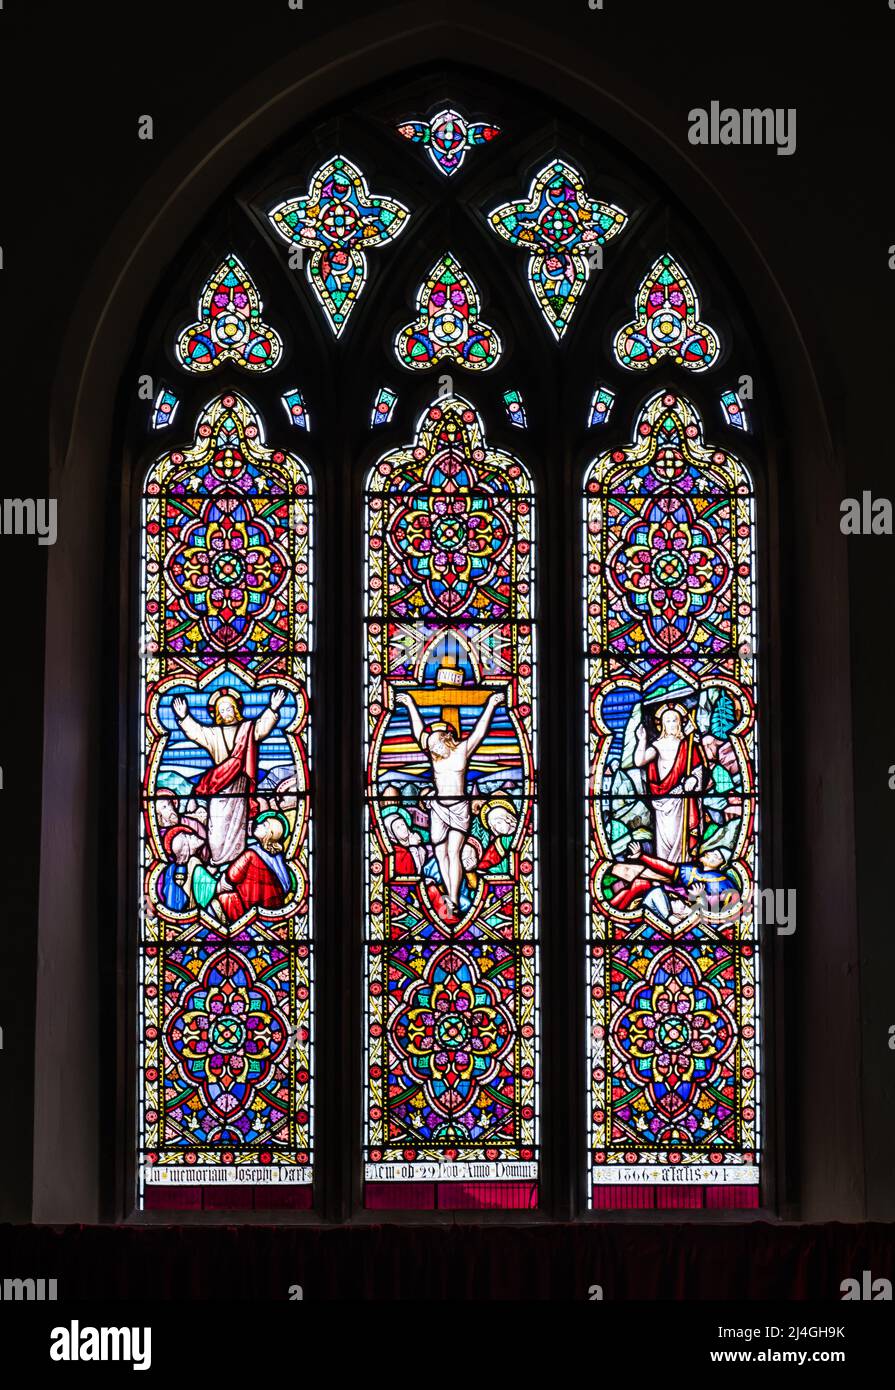 Buntglasfenster in der Allerheiligen-Kirche in Ost-Budleigh. Stockfoto